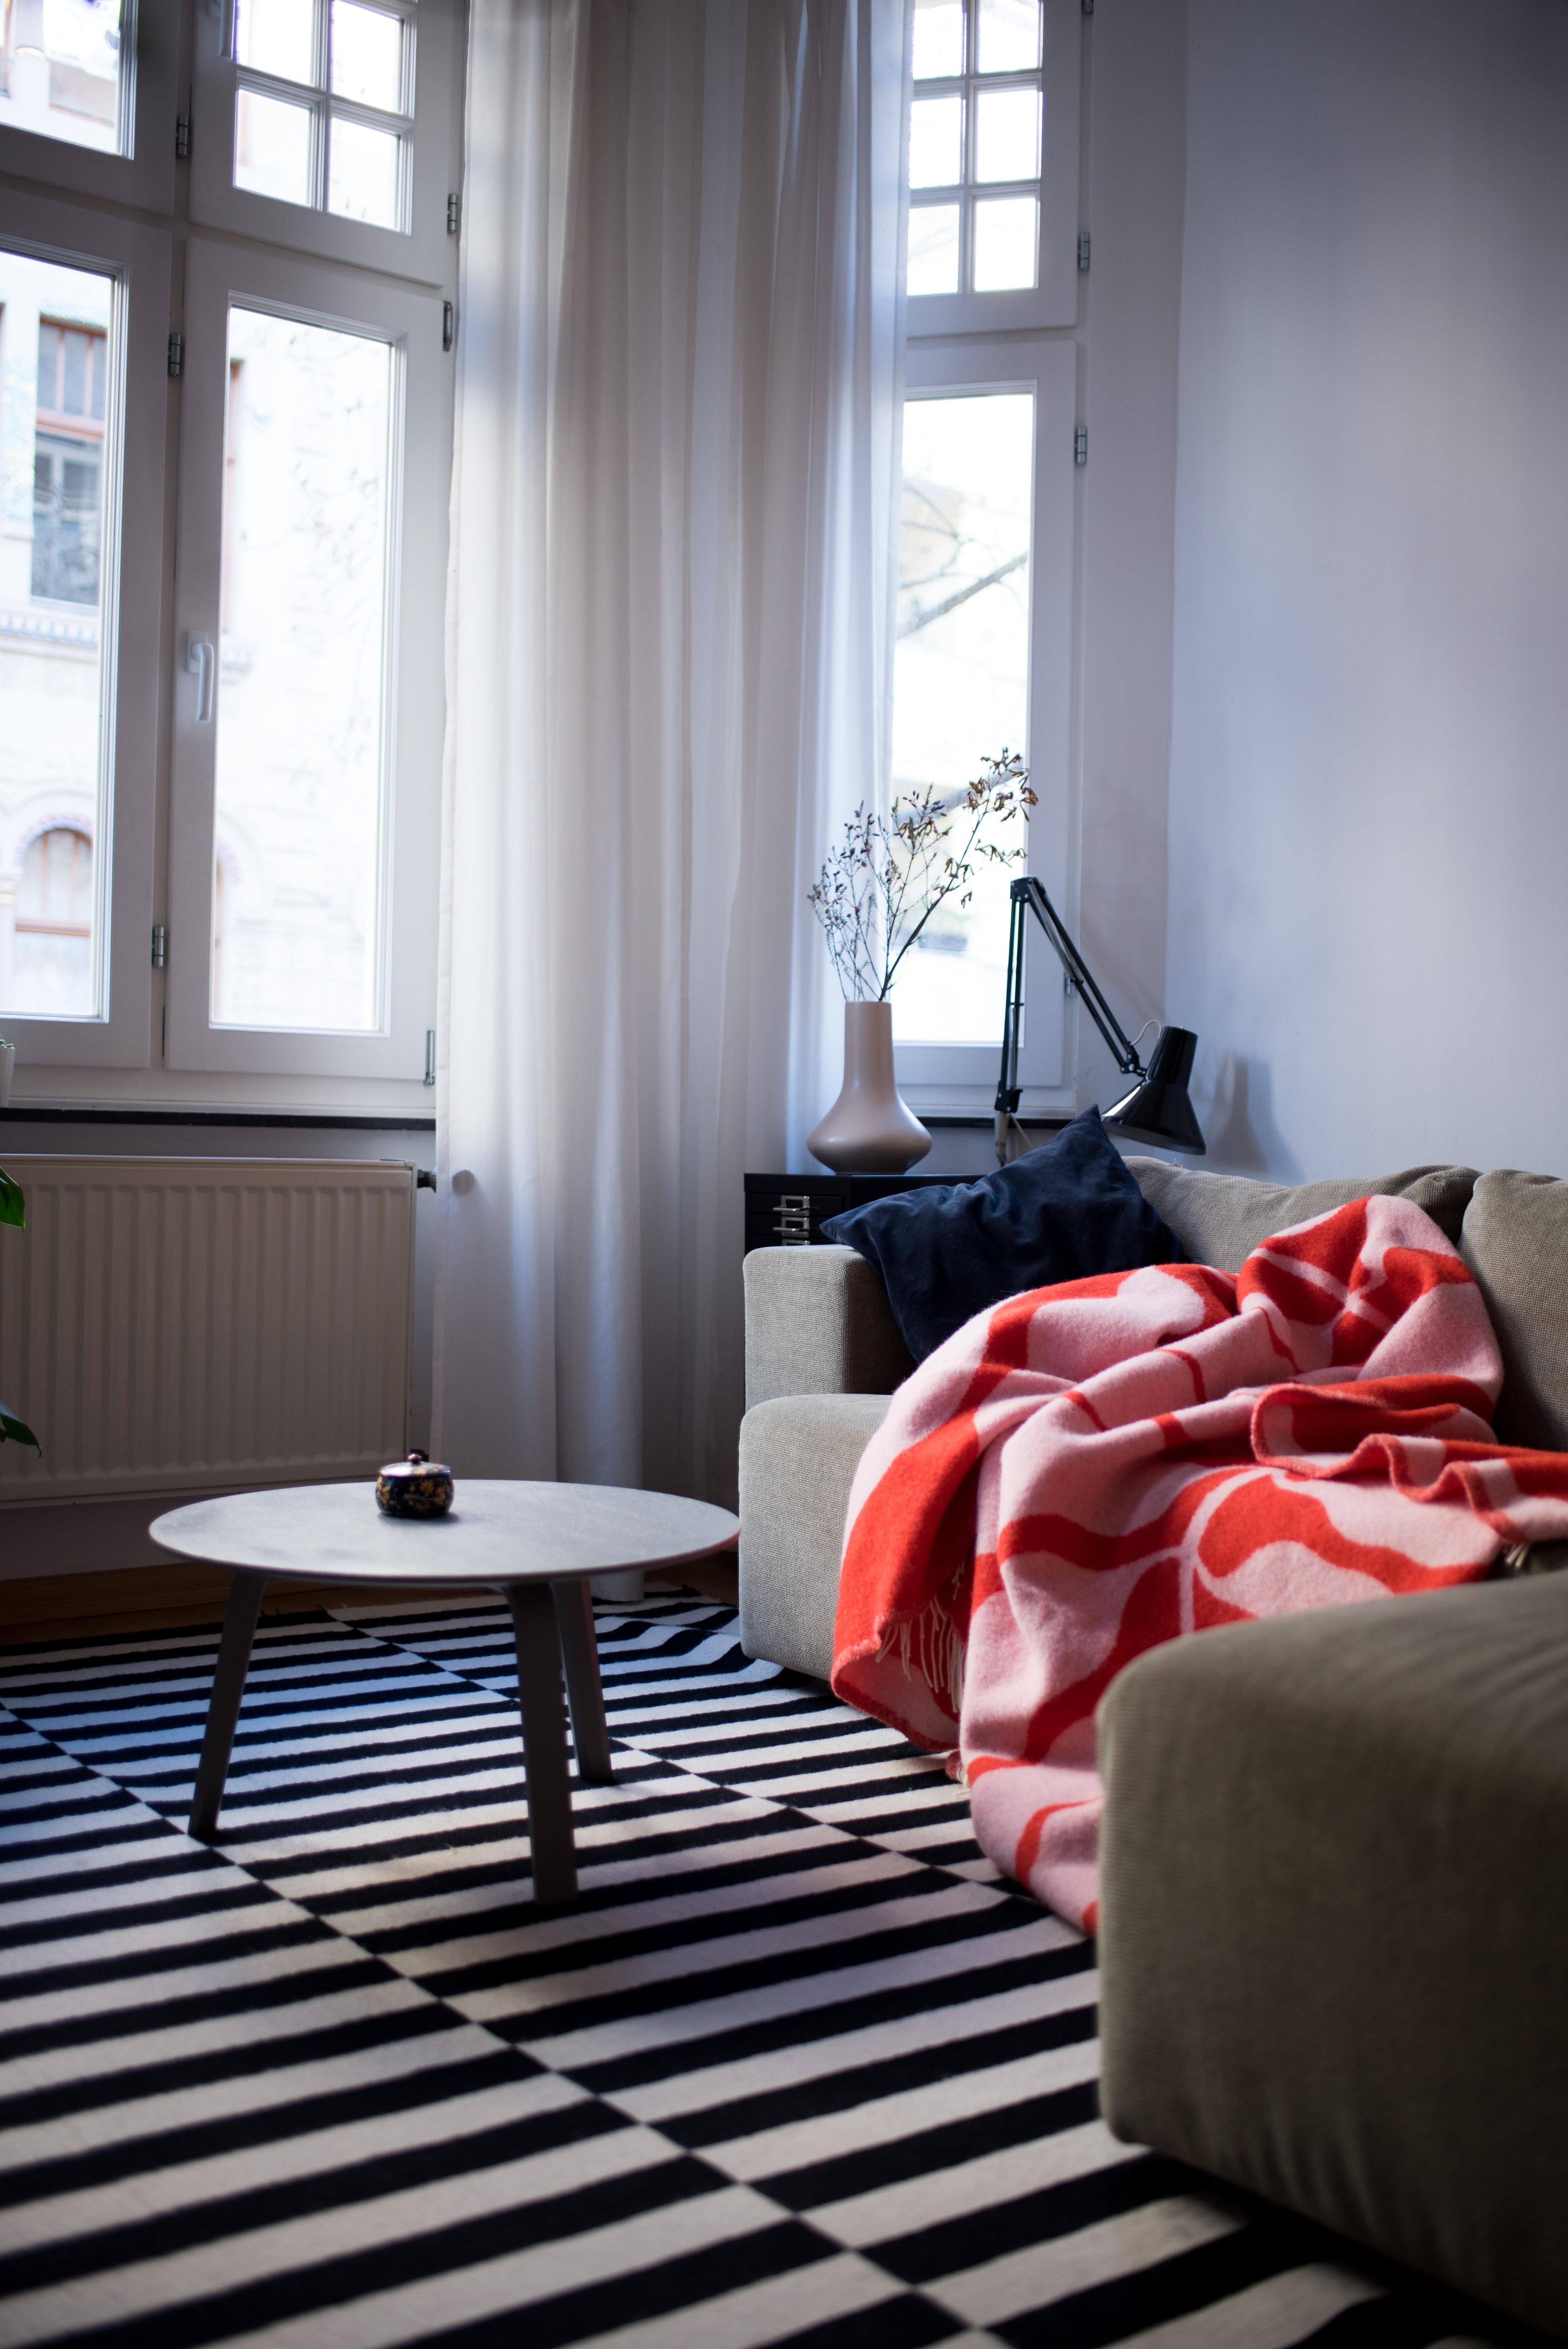 Guten Morgen aus der Kuschelecke! #couch #wohnzimmer #altbau #cozyplace #morningmood #interiorstyle #interior #colorful